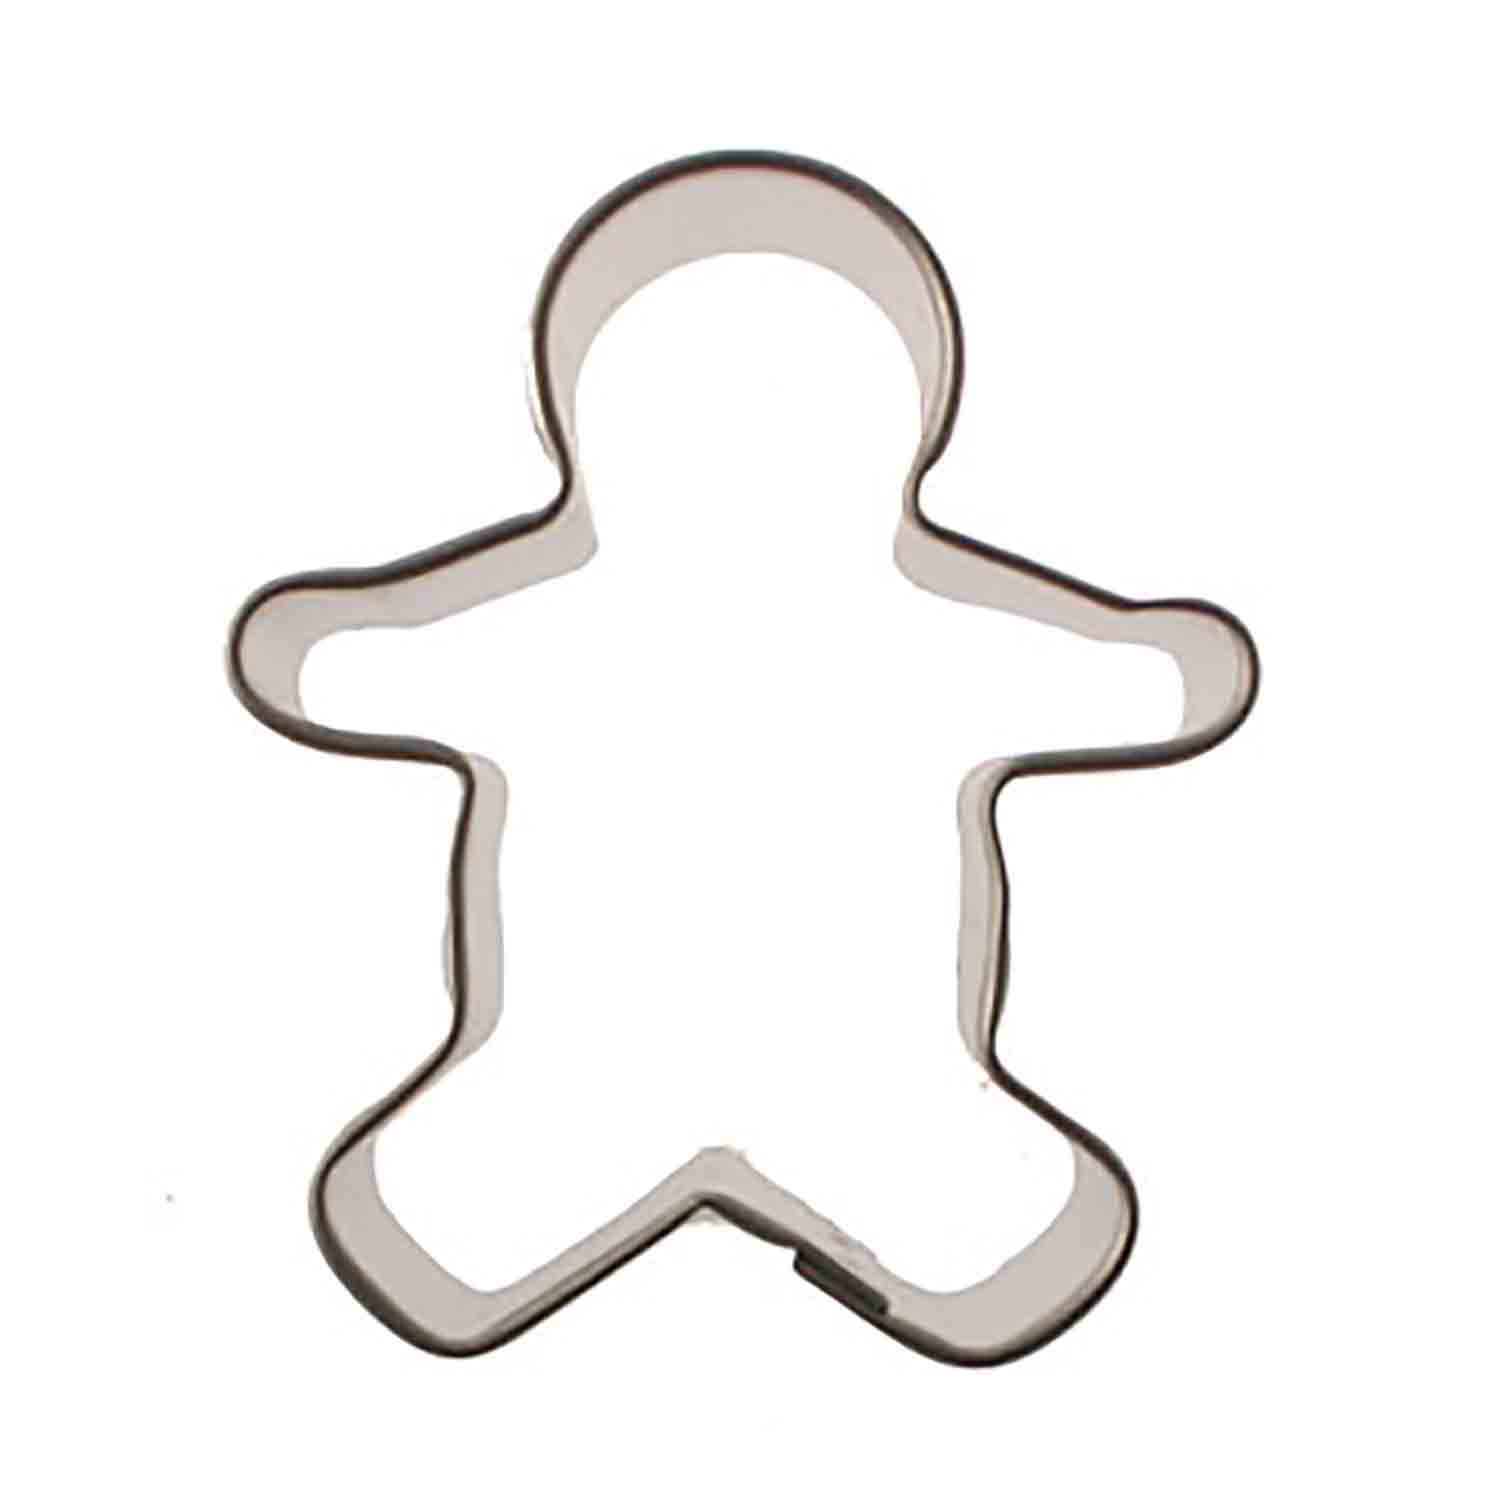 Gingerbread Boy Cookie Cutter